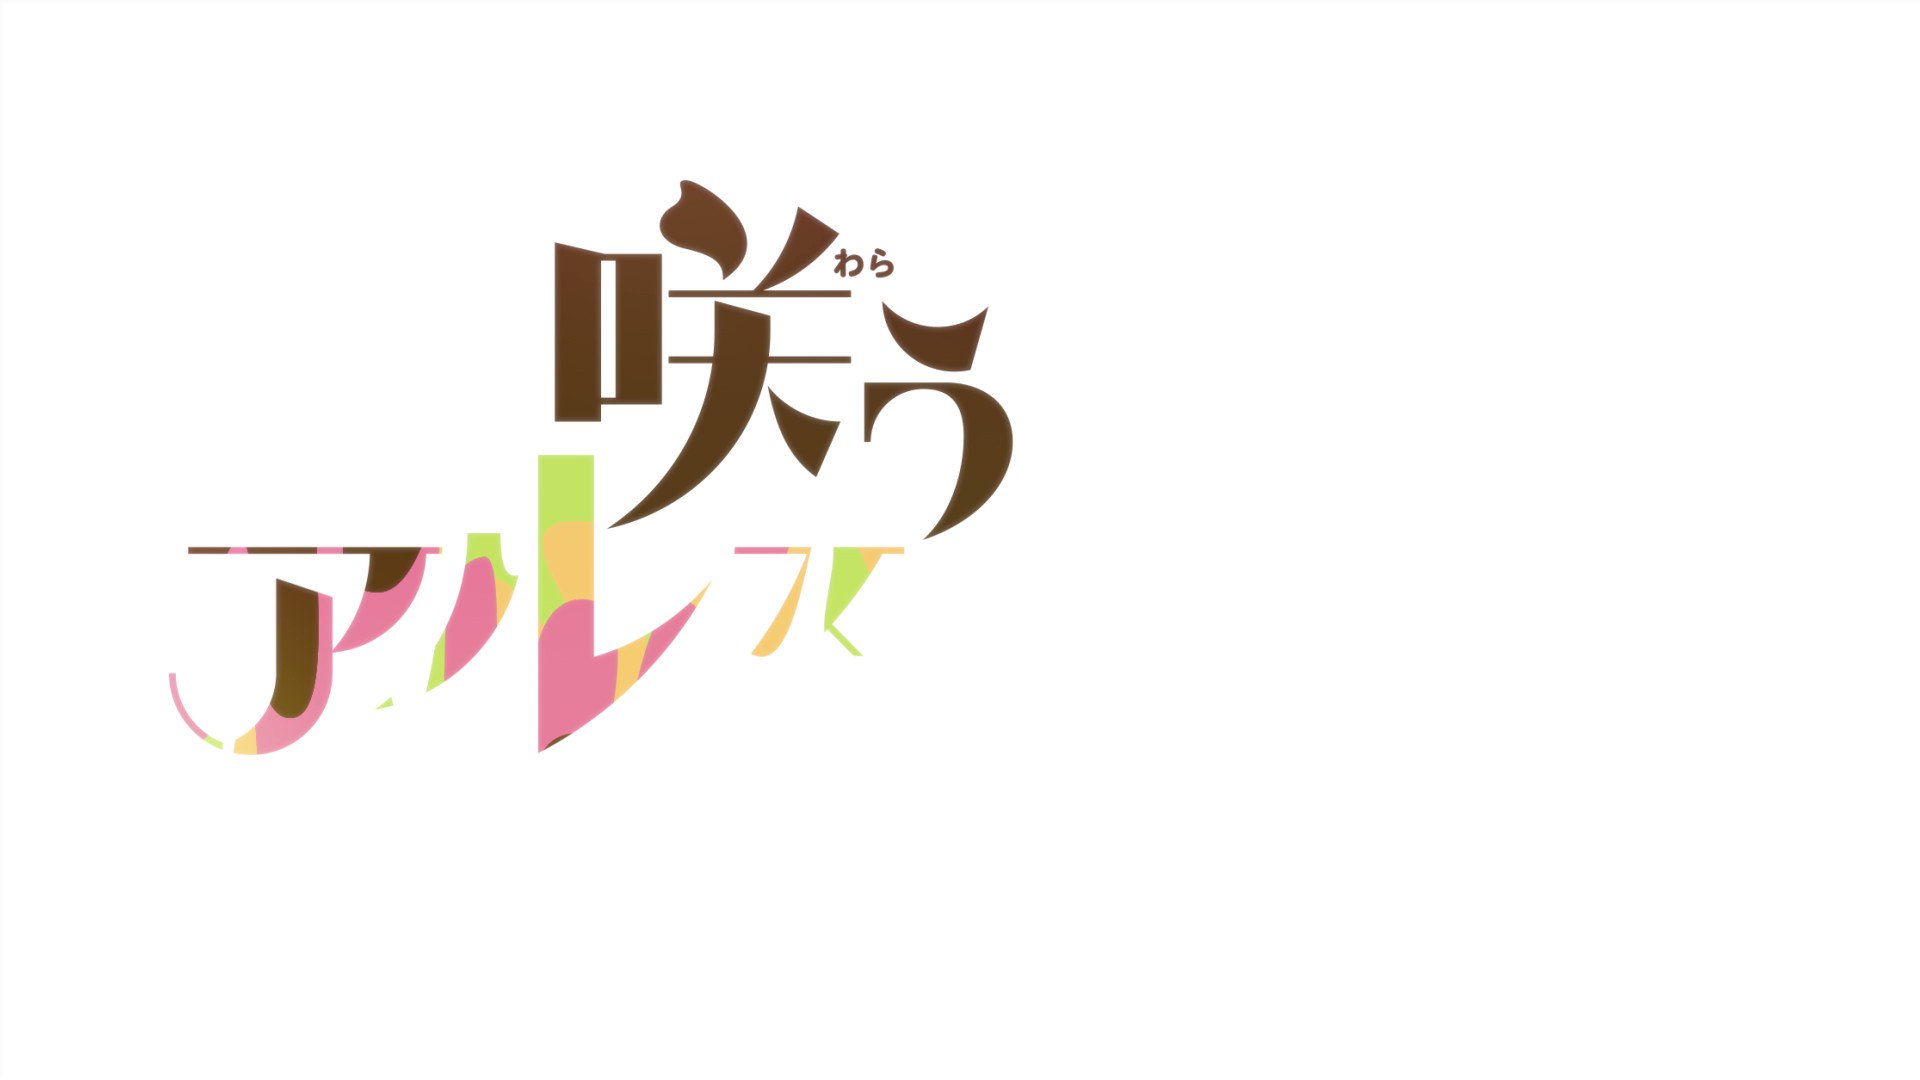 Kudasai on X: Avance del octavo episodio del anime Warau Ars Notoria Sun!  (Smile of the Arsnotoria the Animation), producido por los estudios LIDEN  FILMS, que se emitirá el próximo 24 de